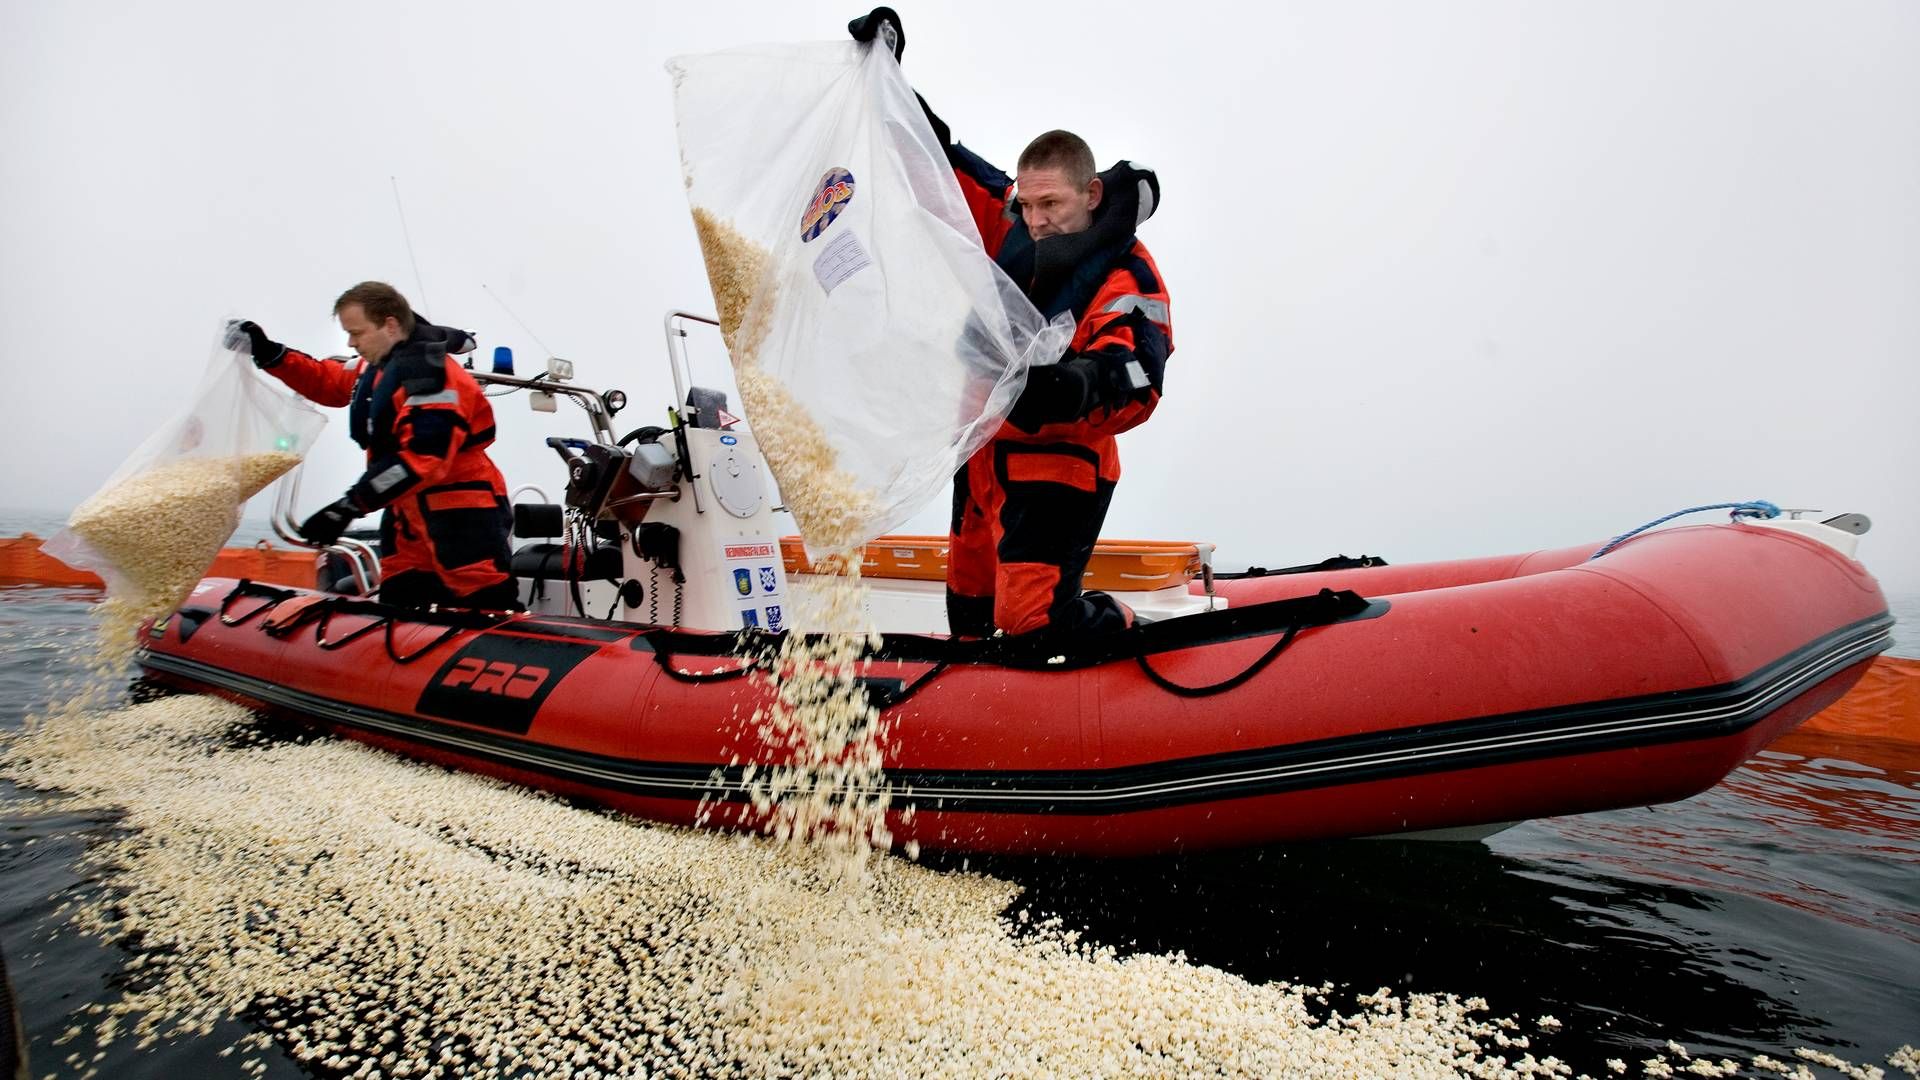 Det er langt fra første gang, at man benytter sig af popcorn for at simulere et olieudslip. Det samme gjorde Falck-redderne Jan og Peter under en øvelse i Brøndby Havn i 2009. | Foto: Jacob Ehrbahn